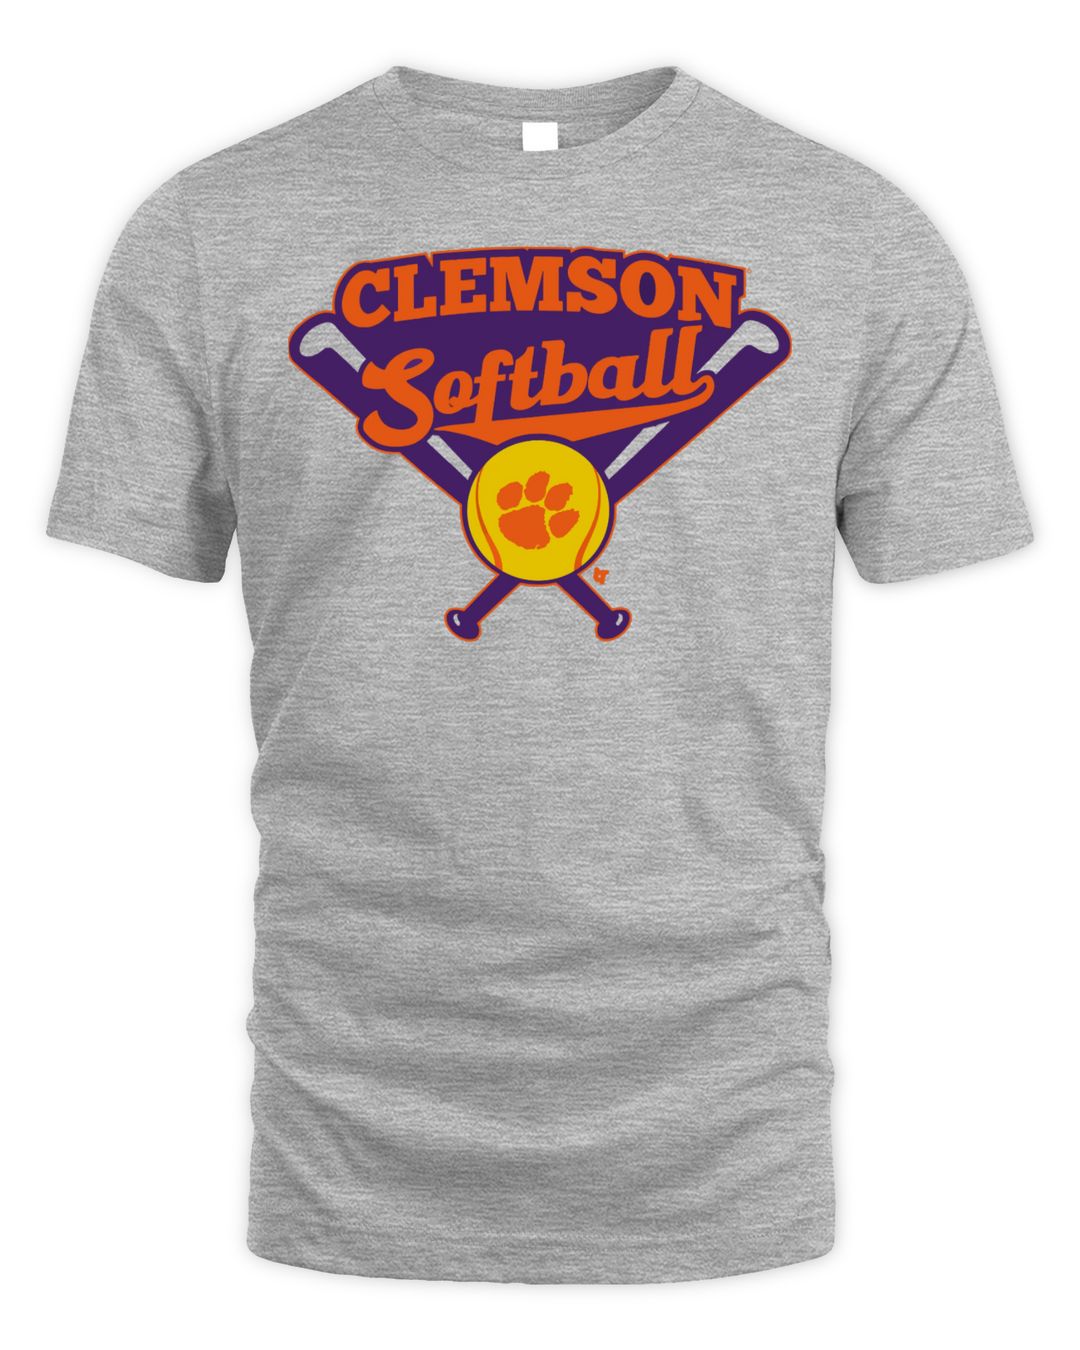 Tigers Clemson Softball Shirt